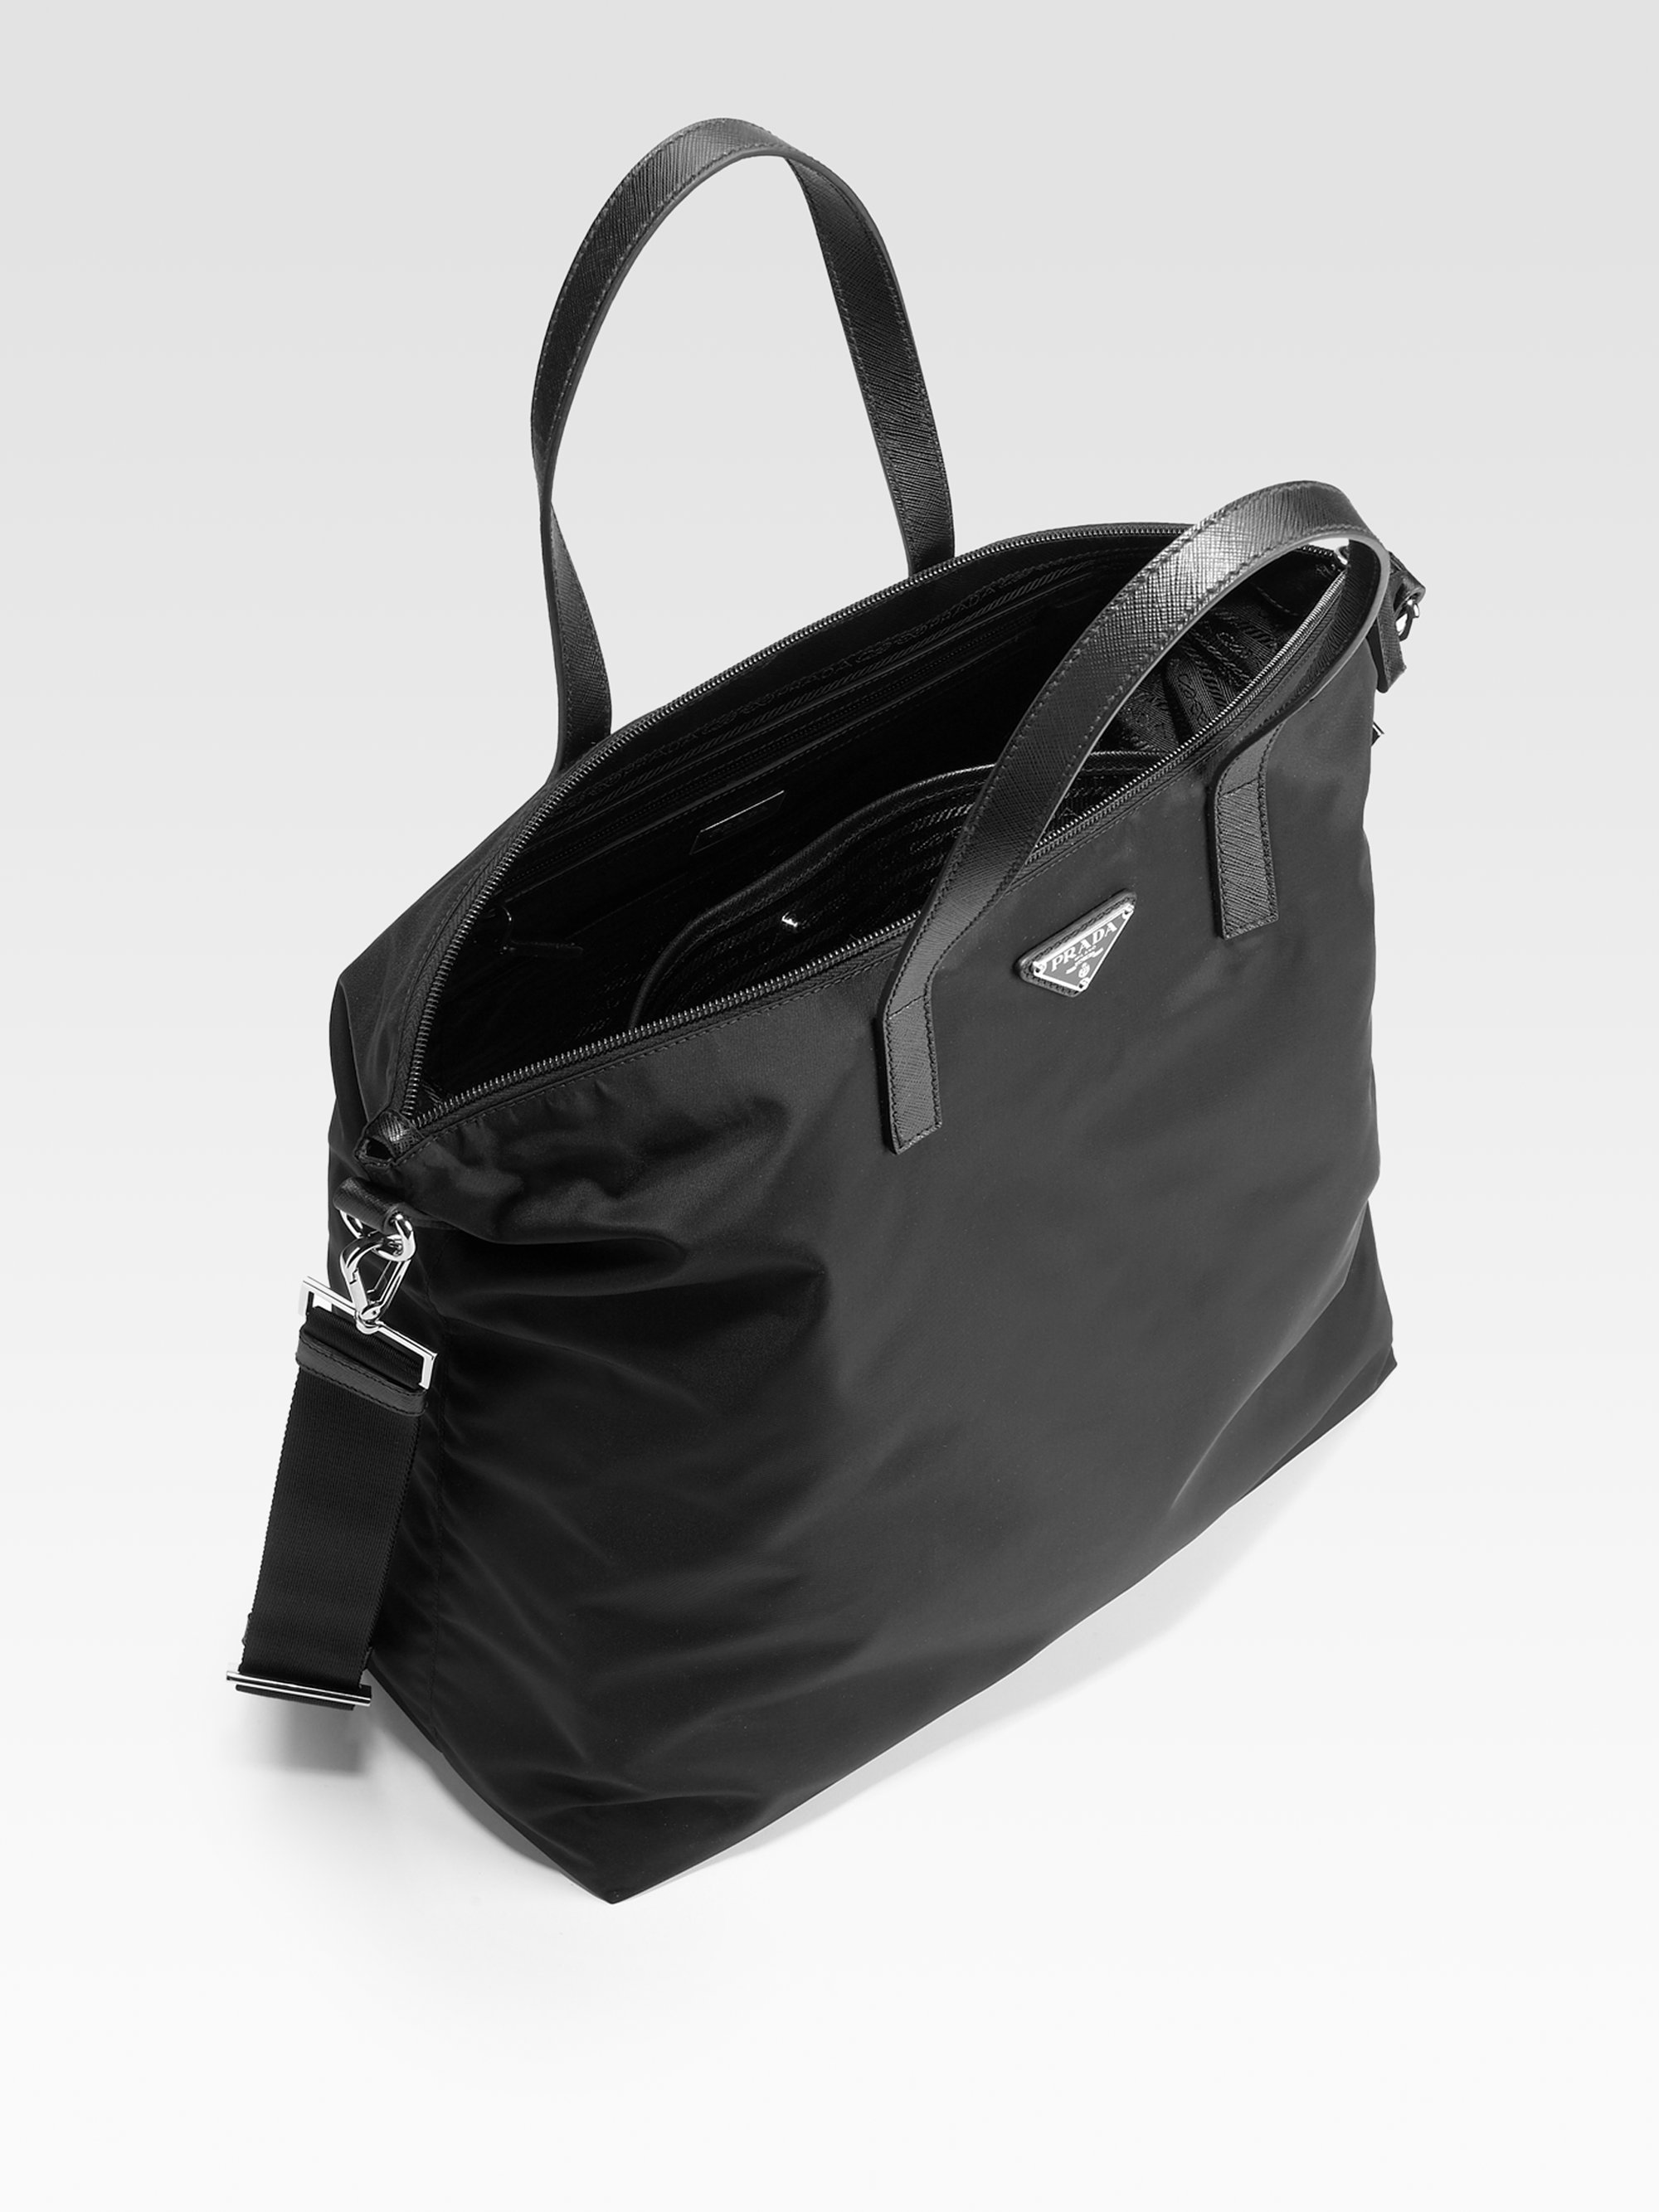 Prada Nylon & Leather Tote Bag in Black for Men - Lyst